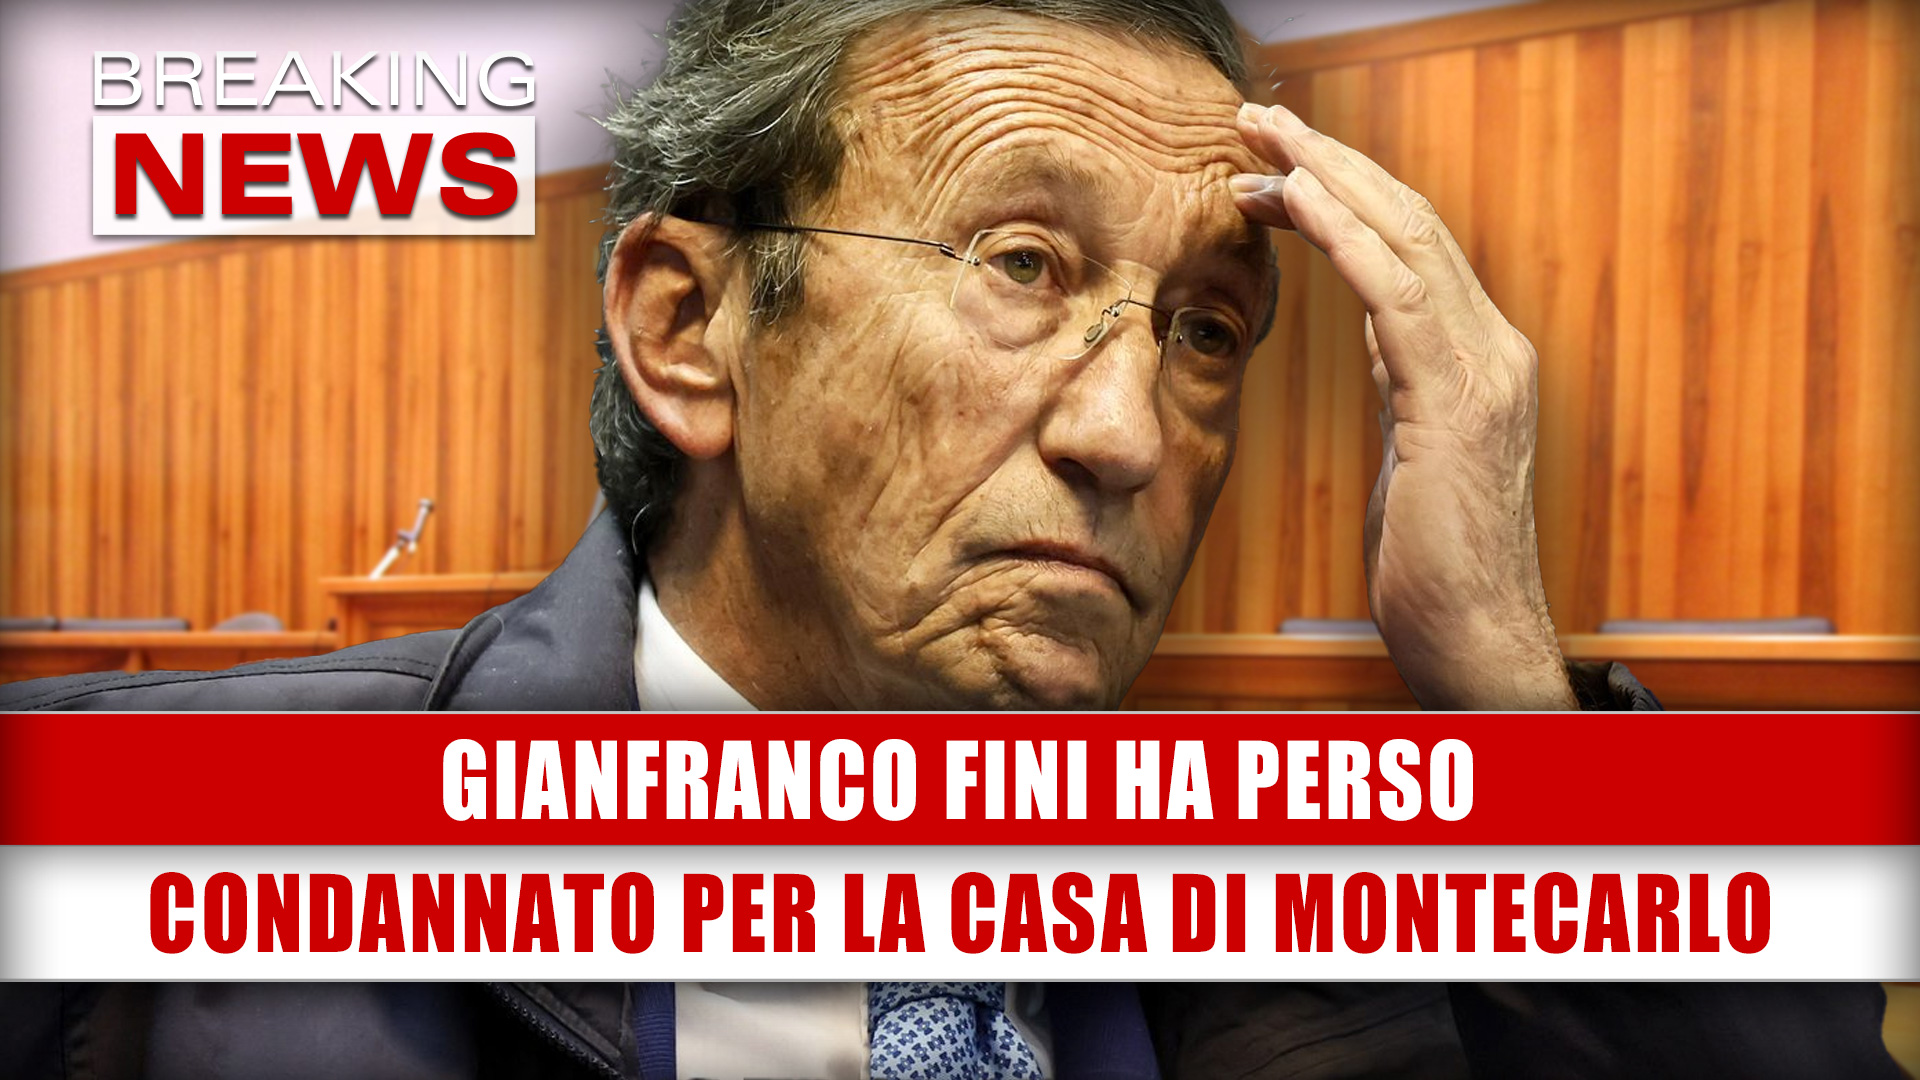 Gianfranco Fini Ha Perso: Condannato Per La Casa Di Montecarlo!